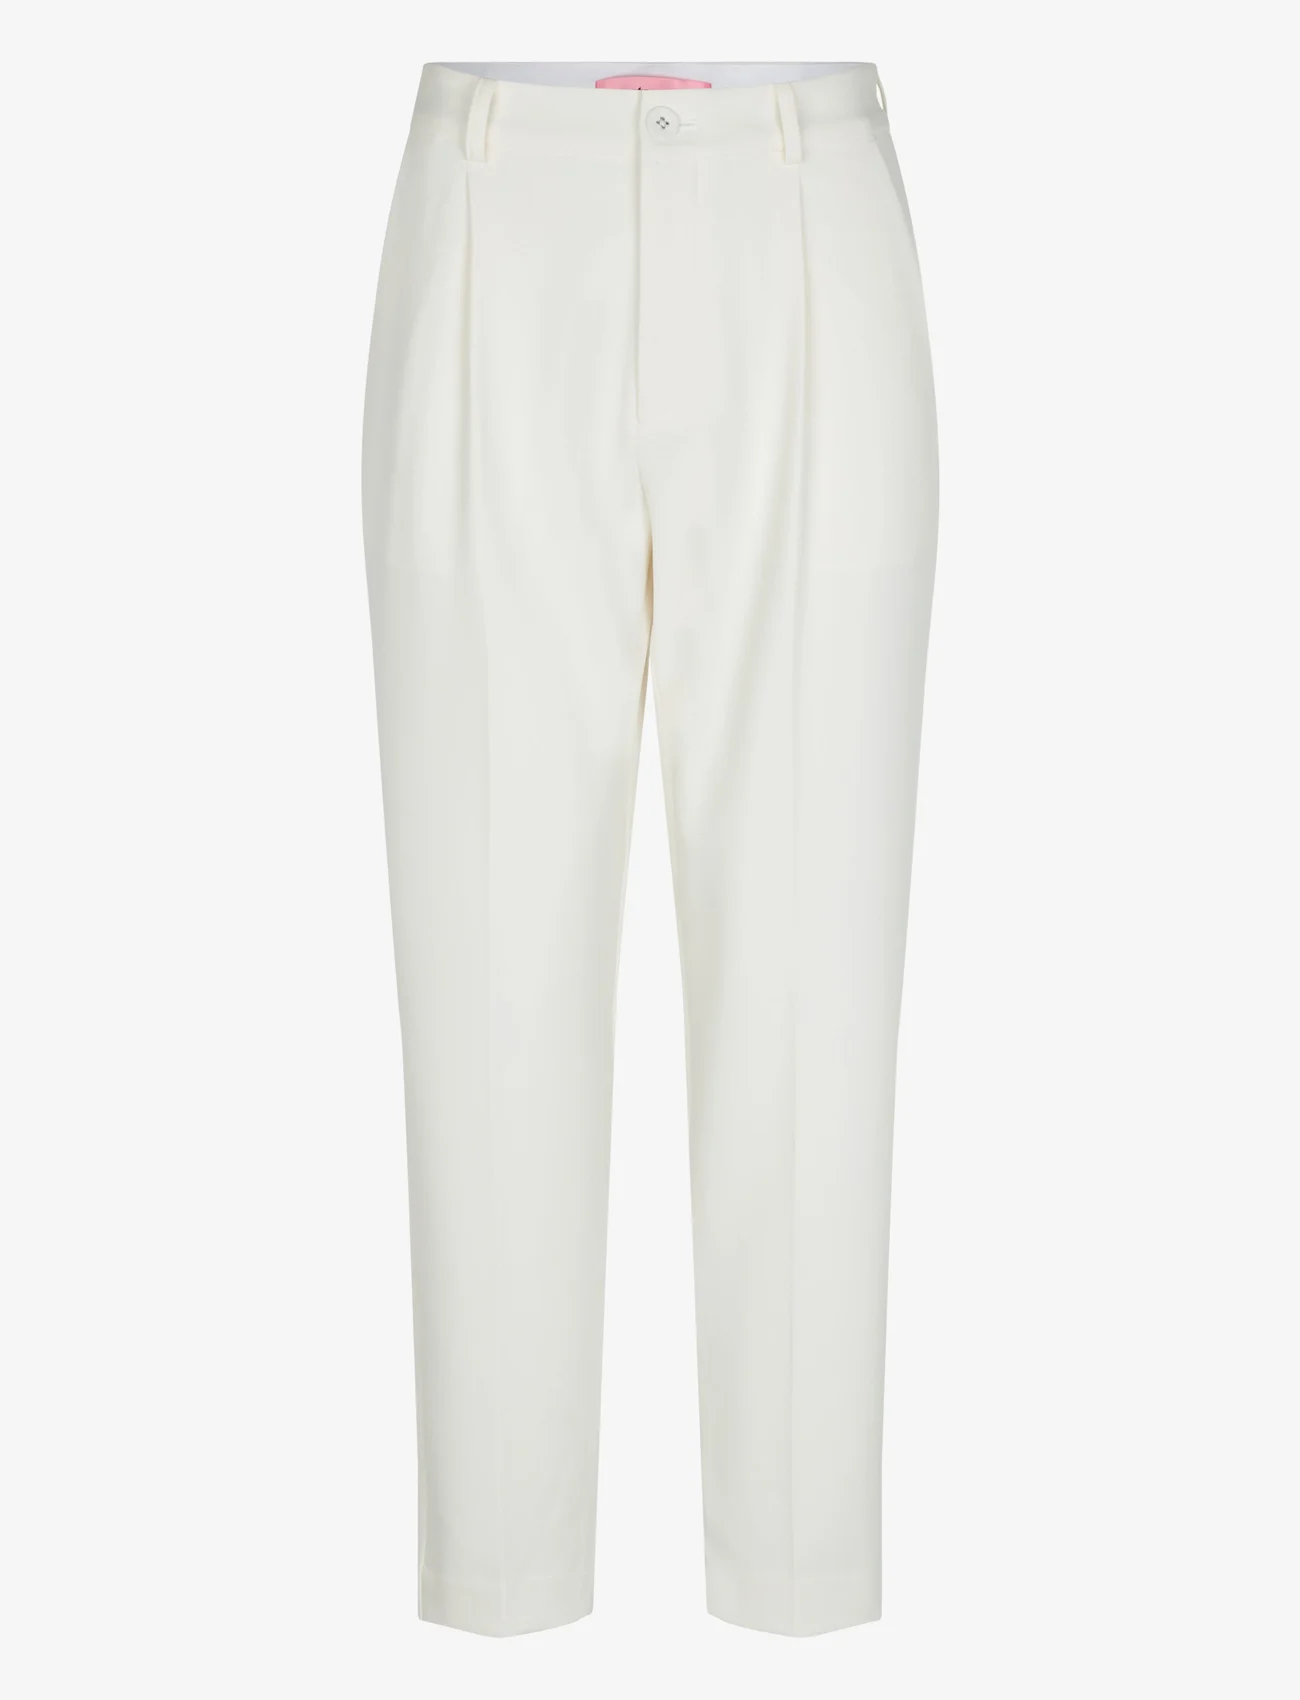 Custommade - Pianora - broeken med straight ben - 010 whisper white - 0